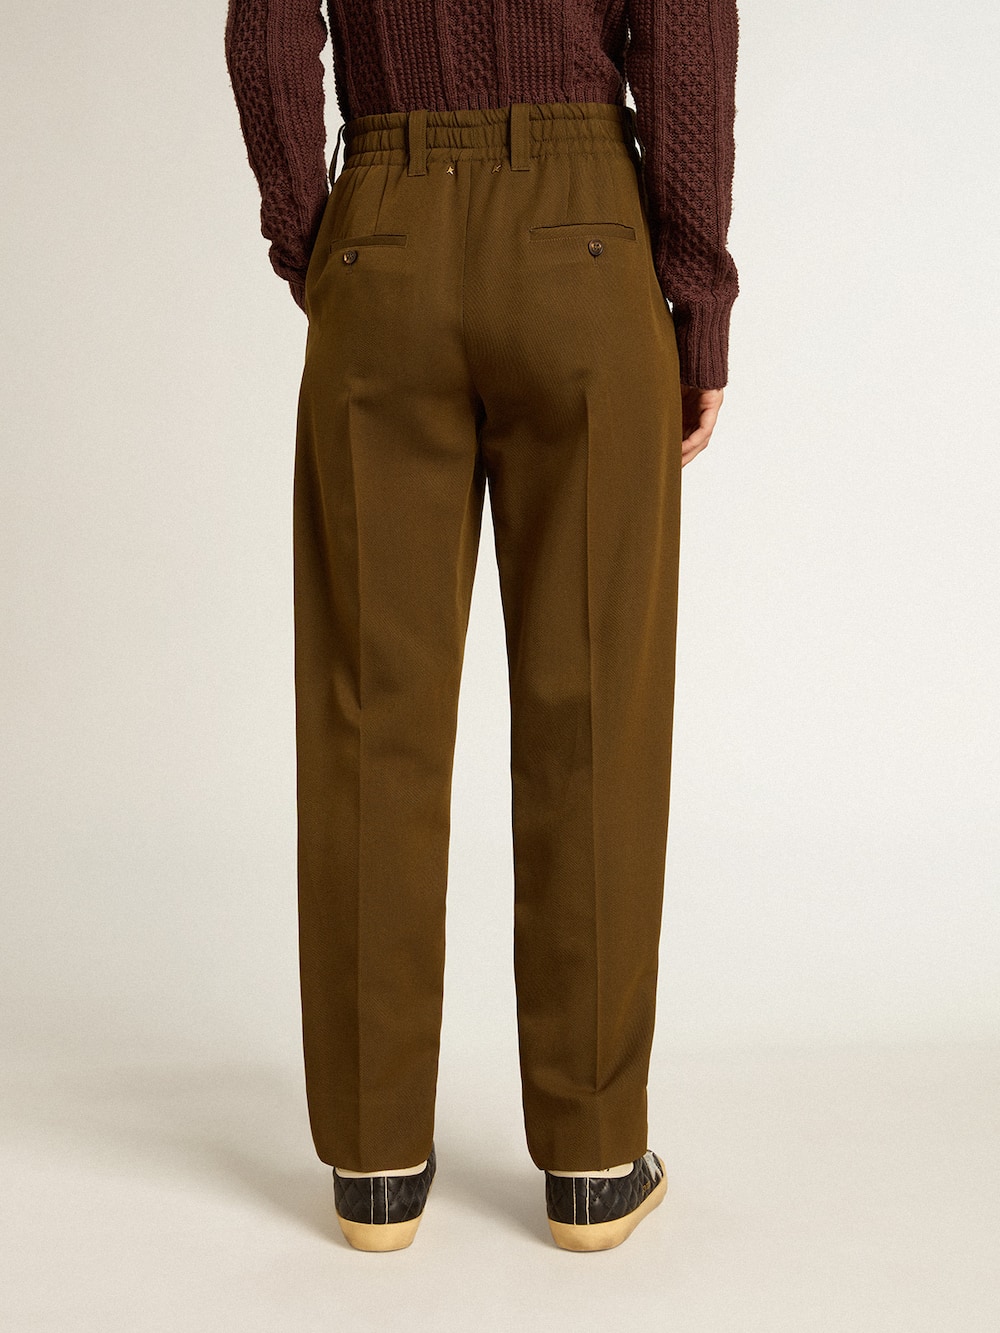 Golden Goose - Pantalone color faggio in misto lana e viscosa in 